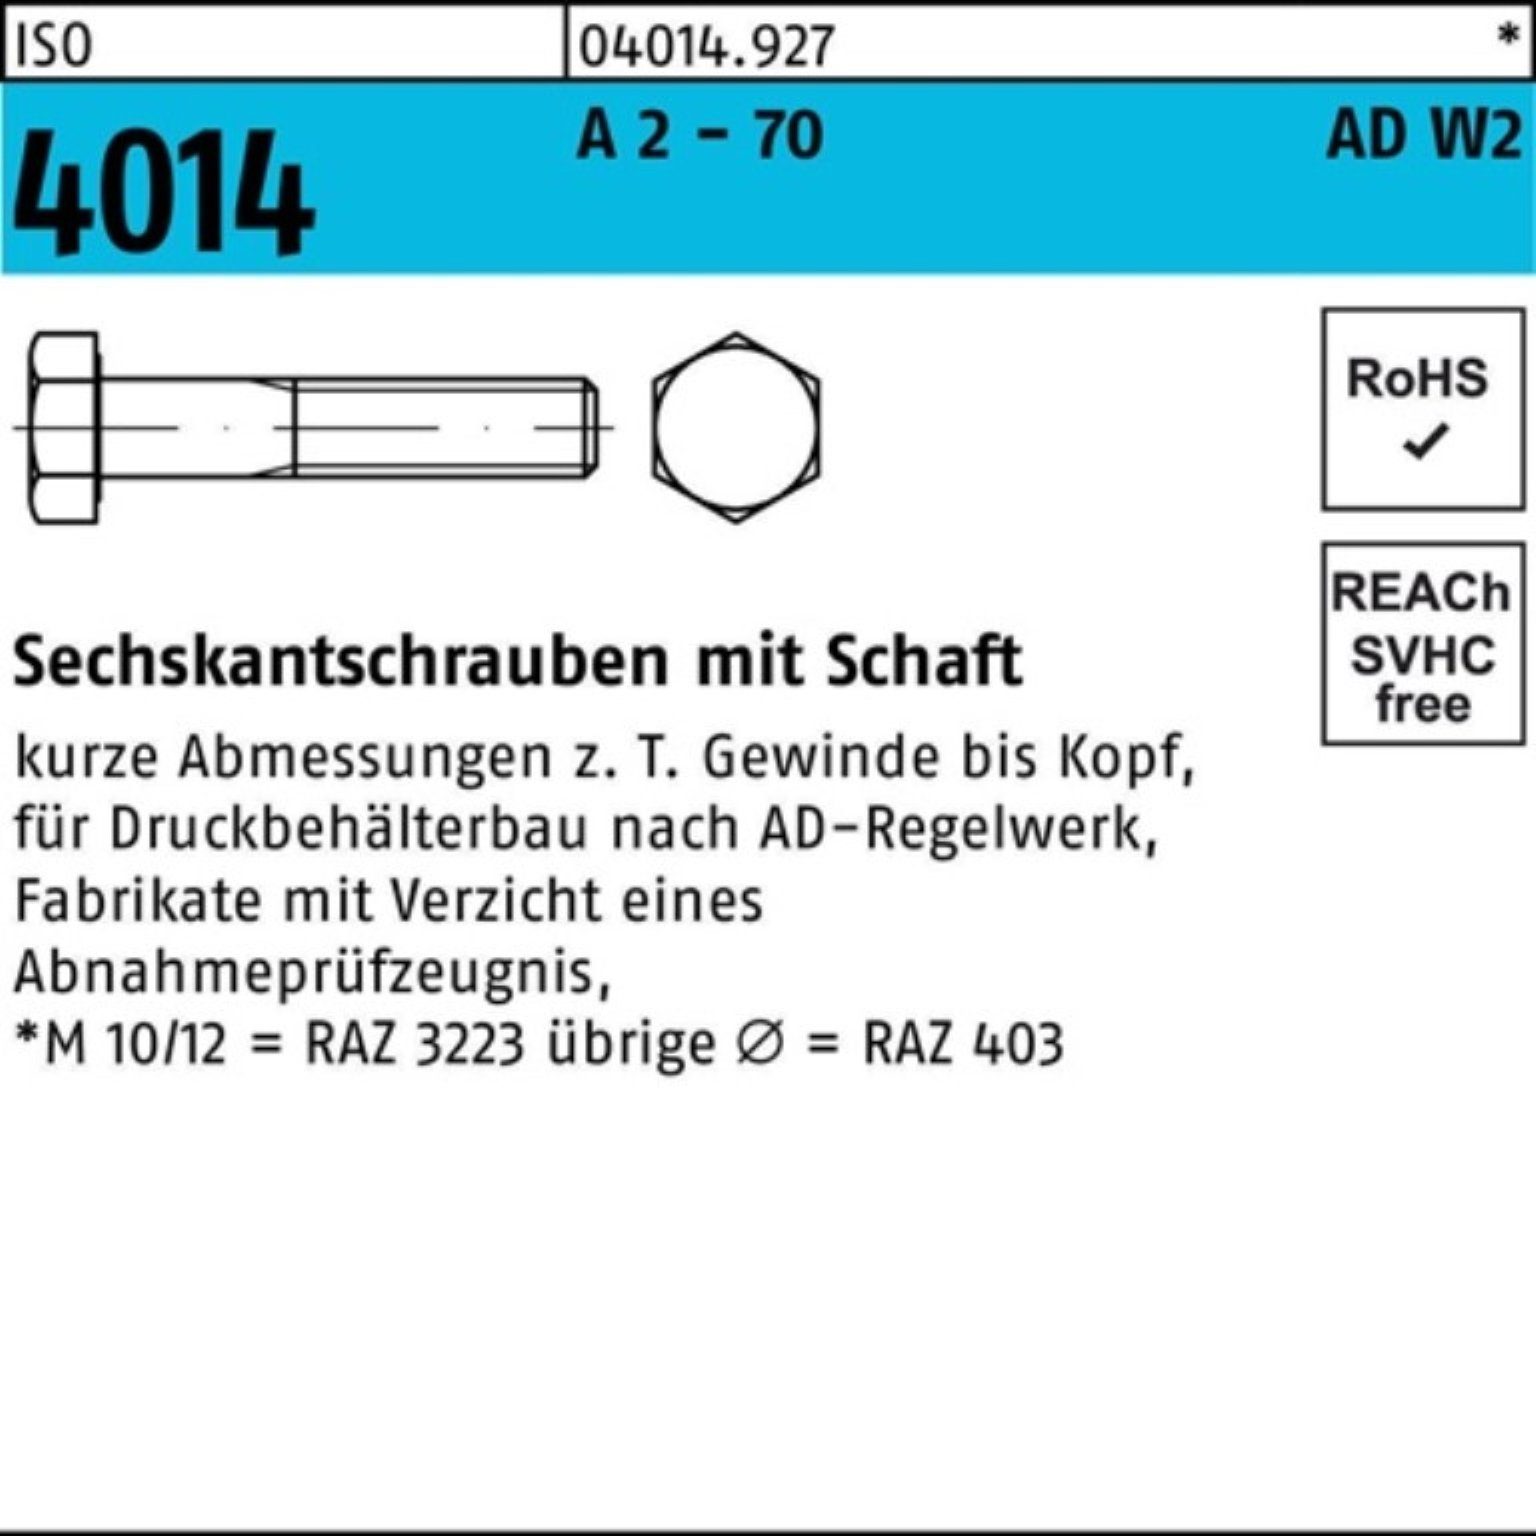 2 Bufab M10x 100er 4014 ISO 70 A AD-W2 10 Sechskantschraube 70 Pack - Sechskantschraube Schaft